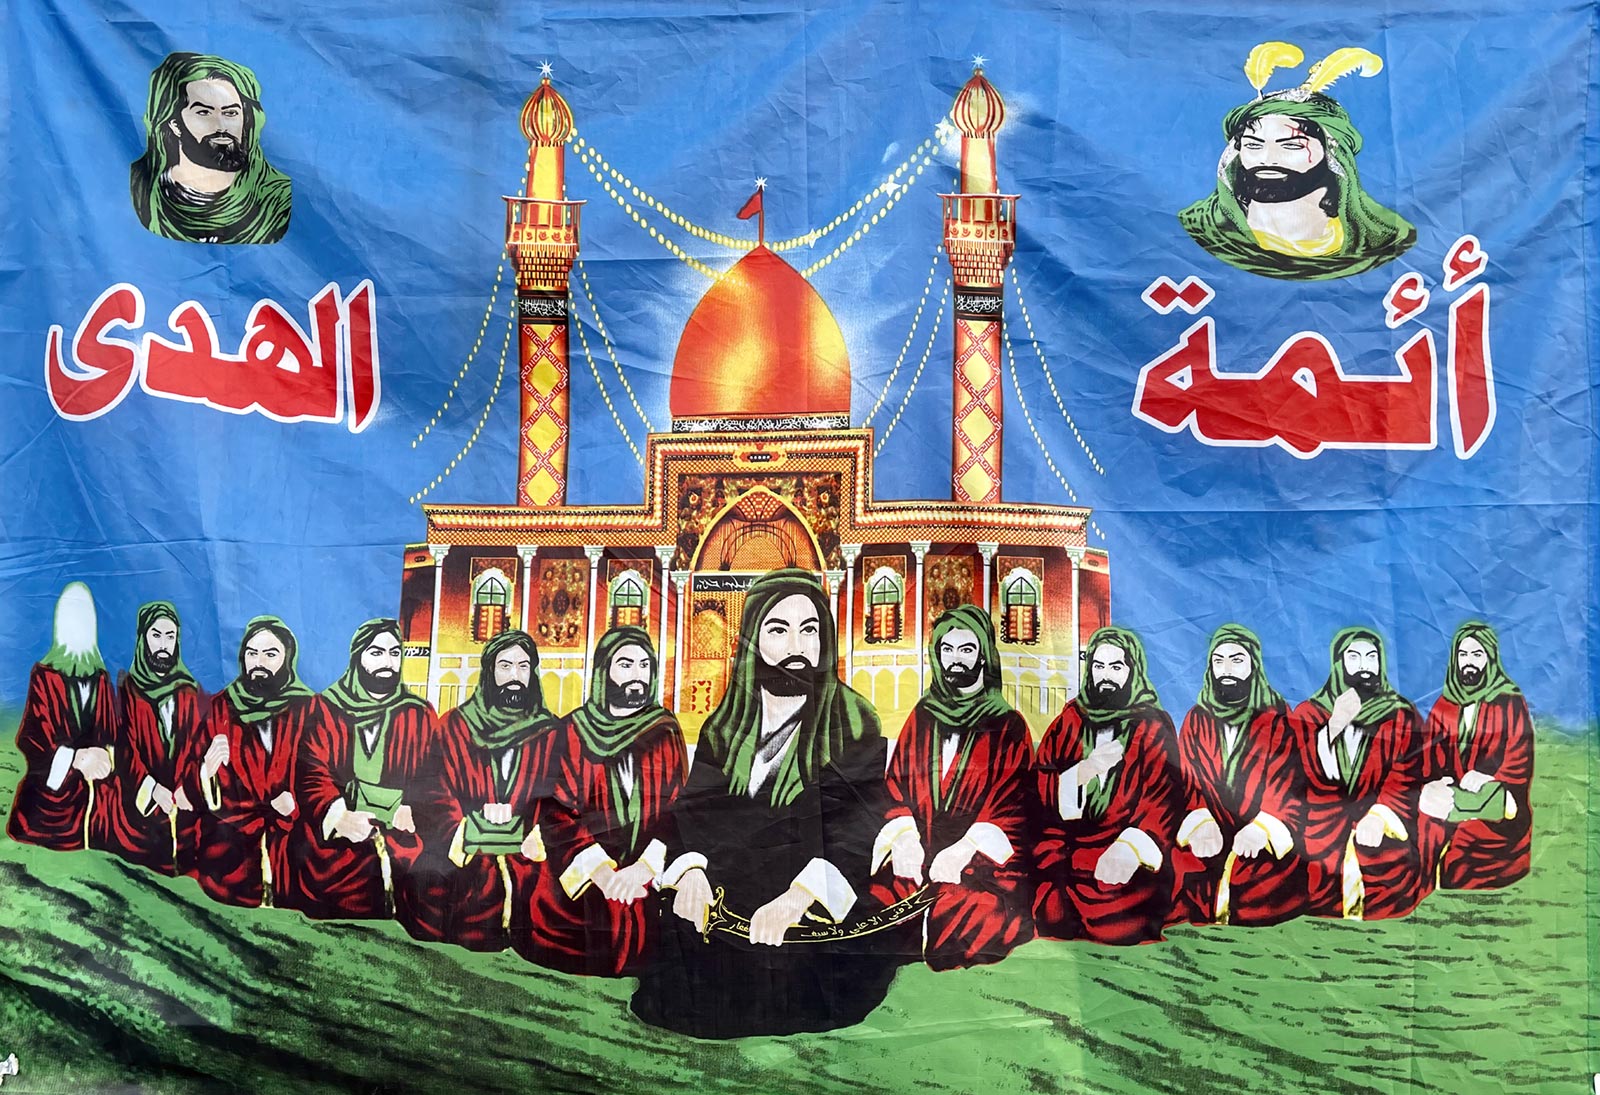 لوحة لاثني عشر إماماً شيعياً يتوسطهم الإمام علي